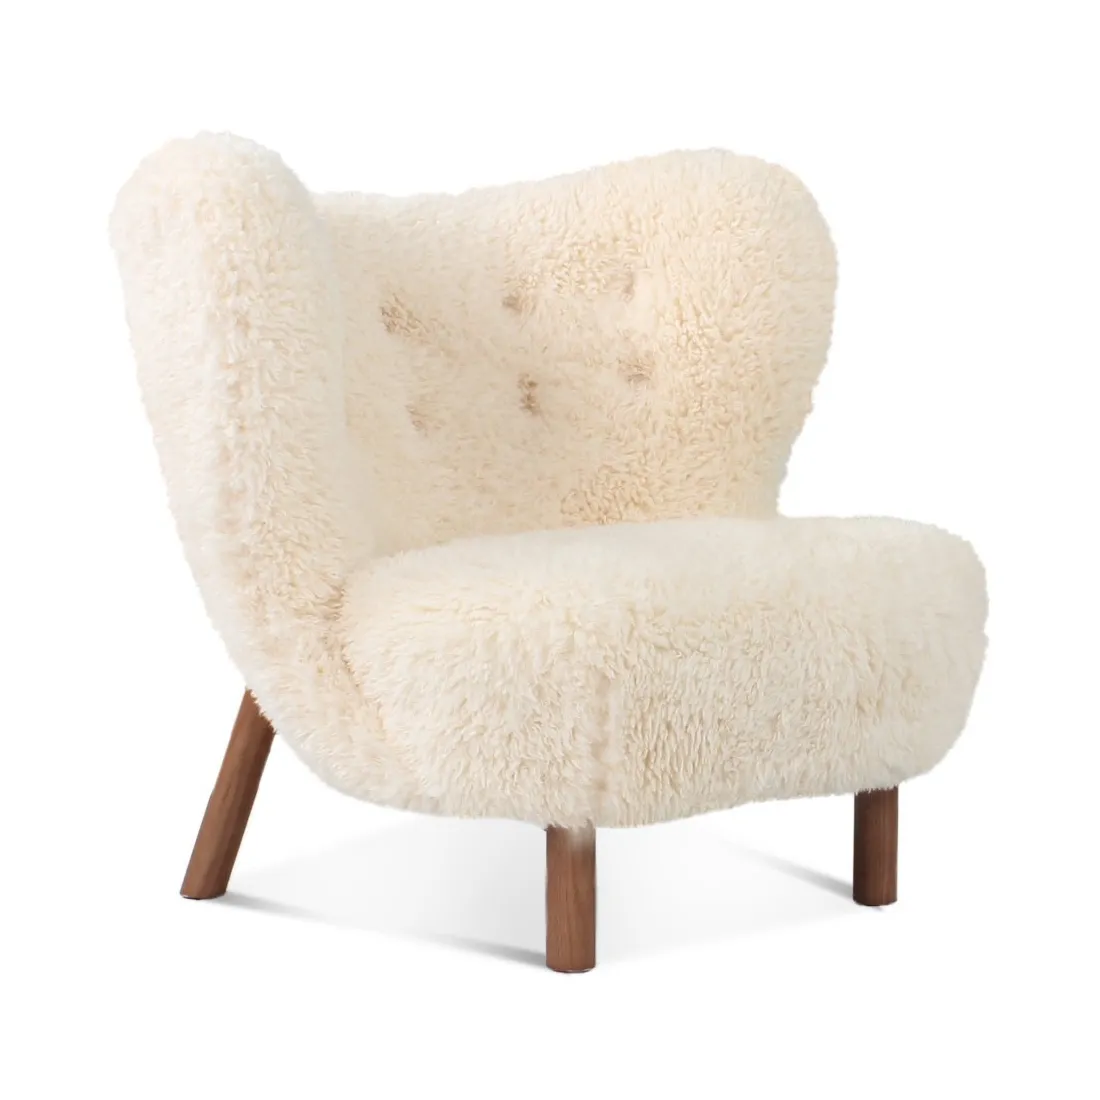 Экологичный стул из дубового дерева с натуральным покрытием или твердыми дубовыми ножками, окрашенными из орехового дерева, для гостиной